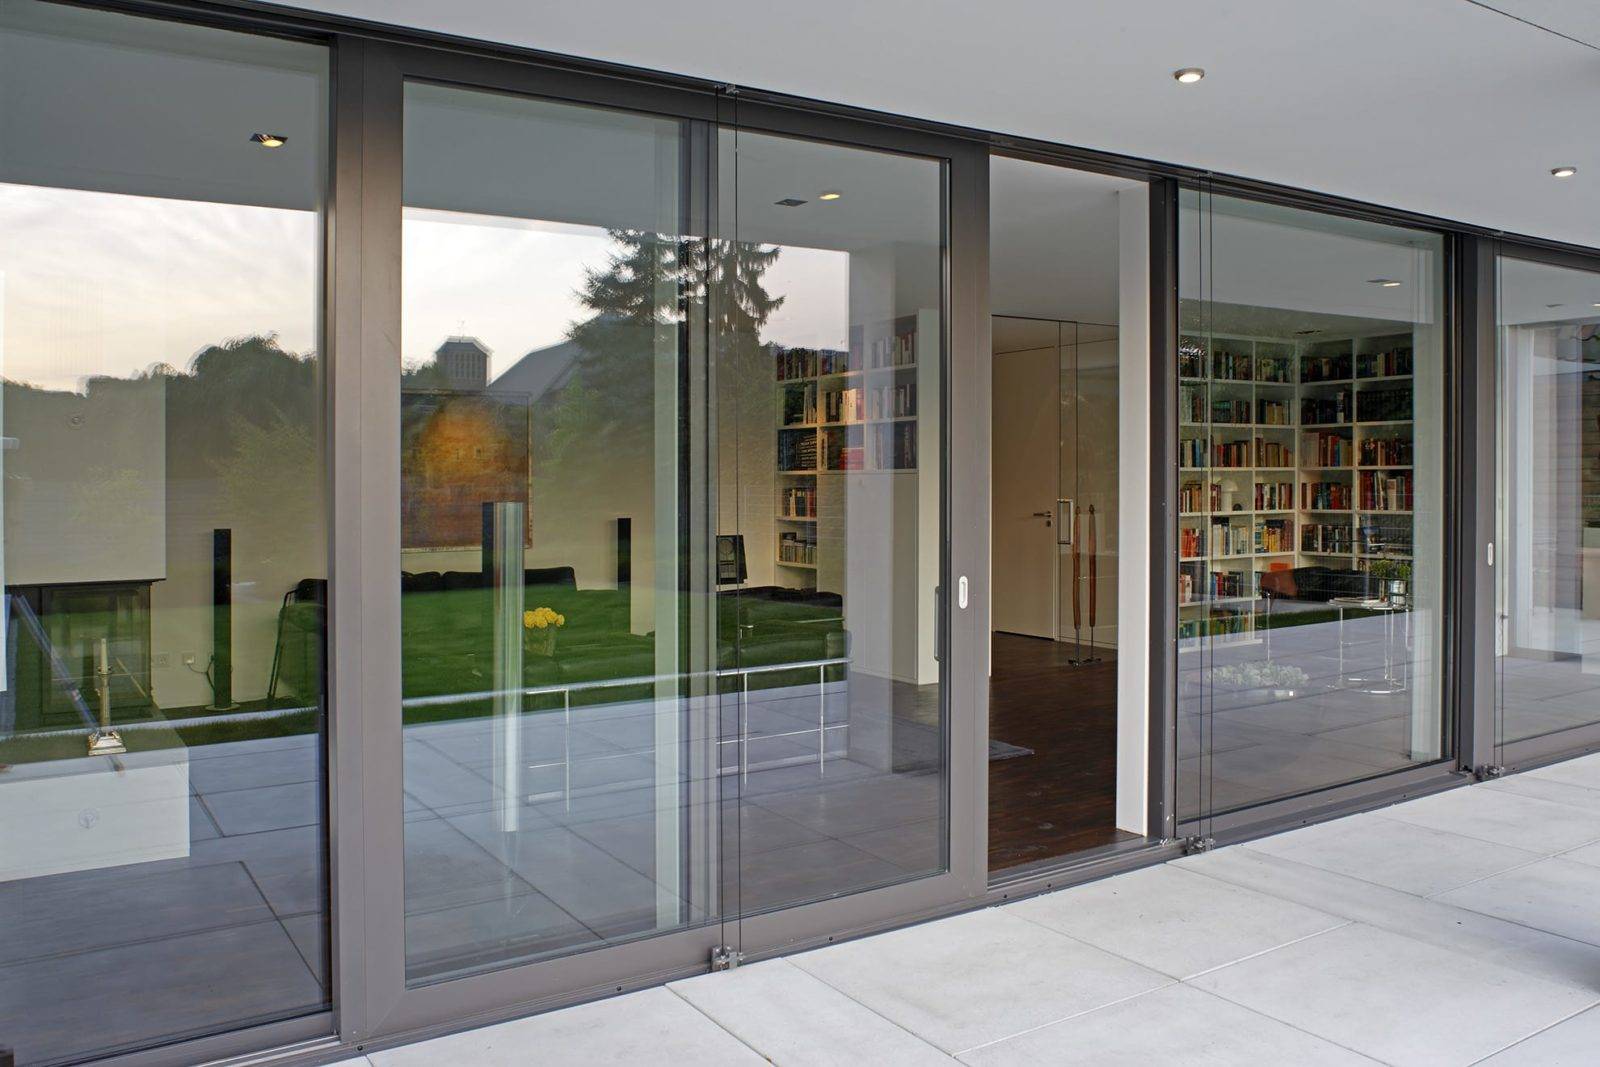 Алюминиевые двери: входные со стеклом + теплый профиль